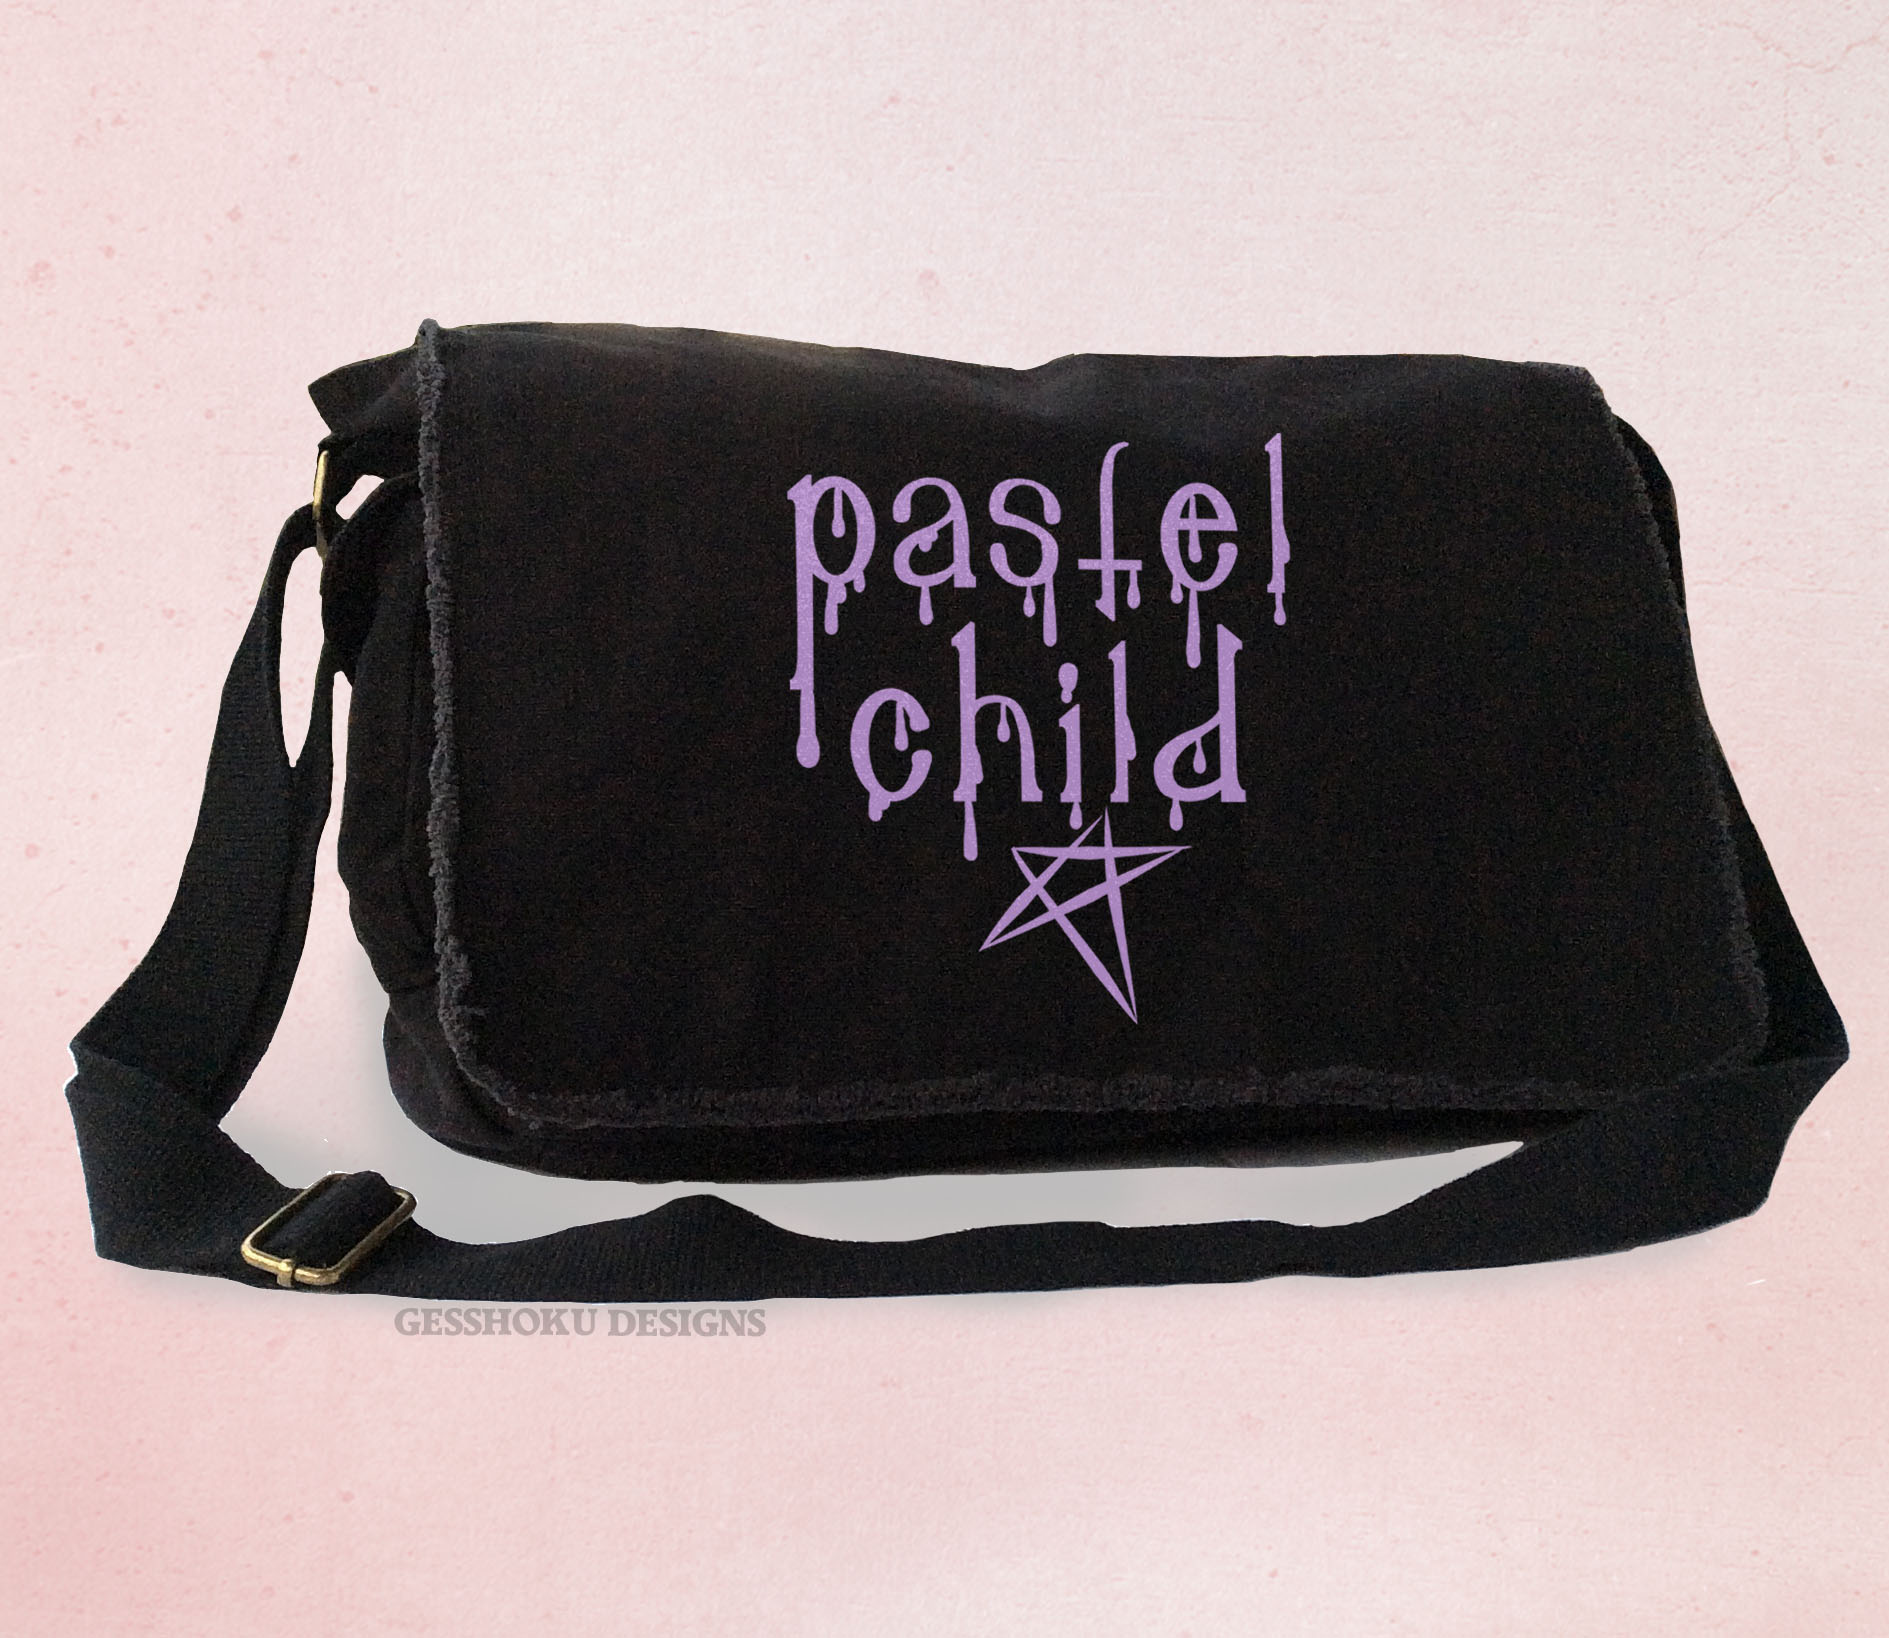 Pastel Child Messenger Bag - Black-